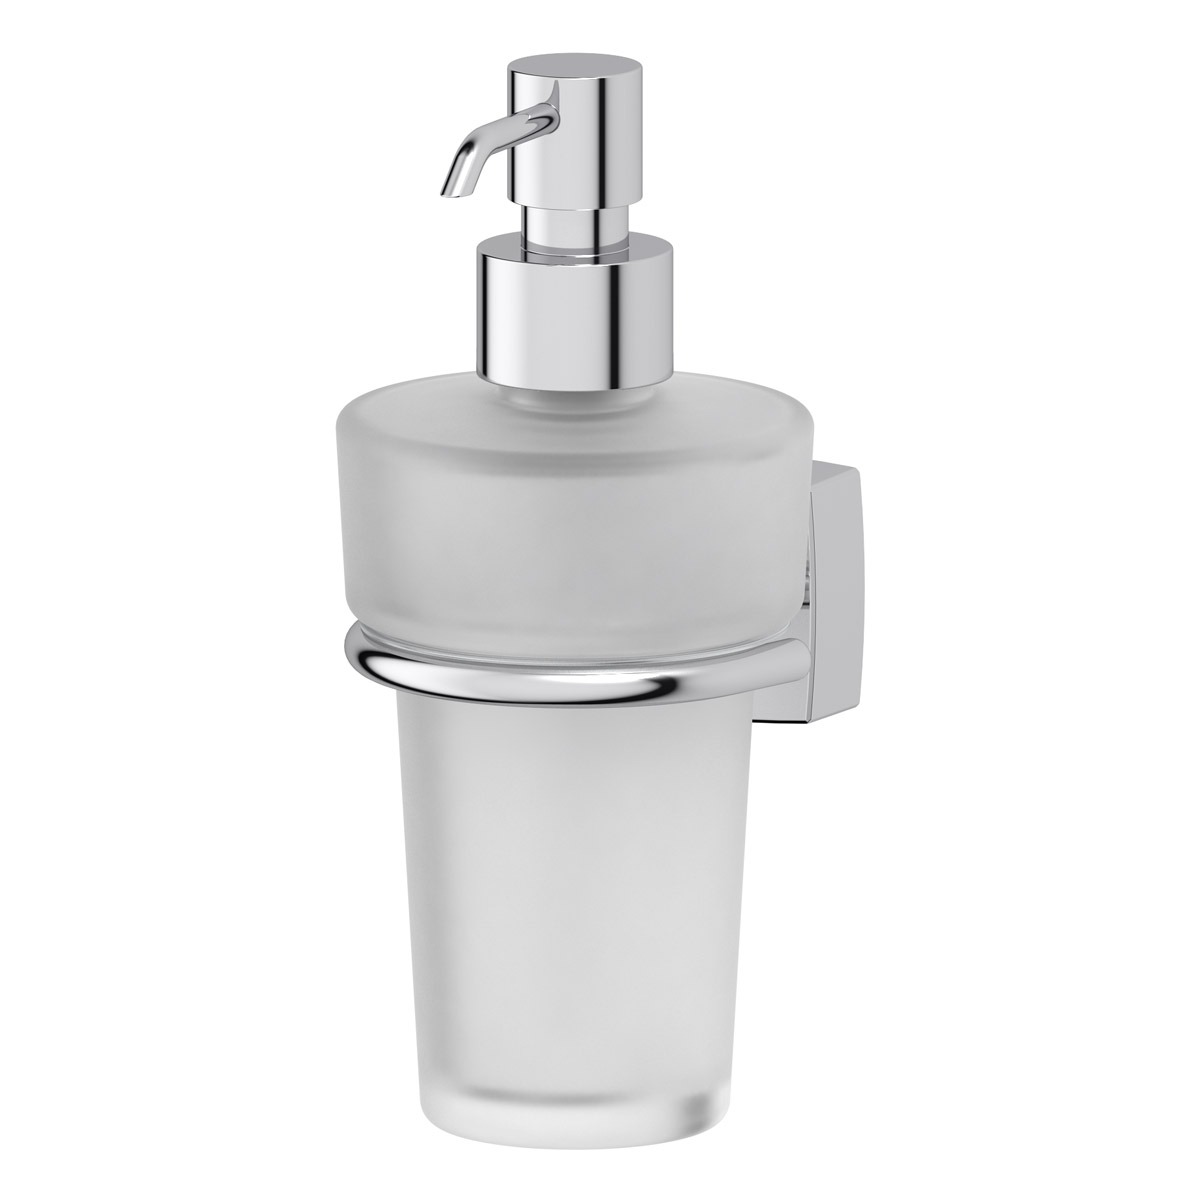 Емкость-дозатор для жидкого мыла стекло fbs (ESP 009) дозатор для жидкого мыла solinne b 82706 стекло хром 2516 132